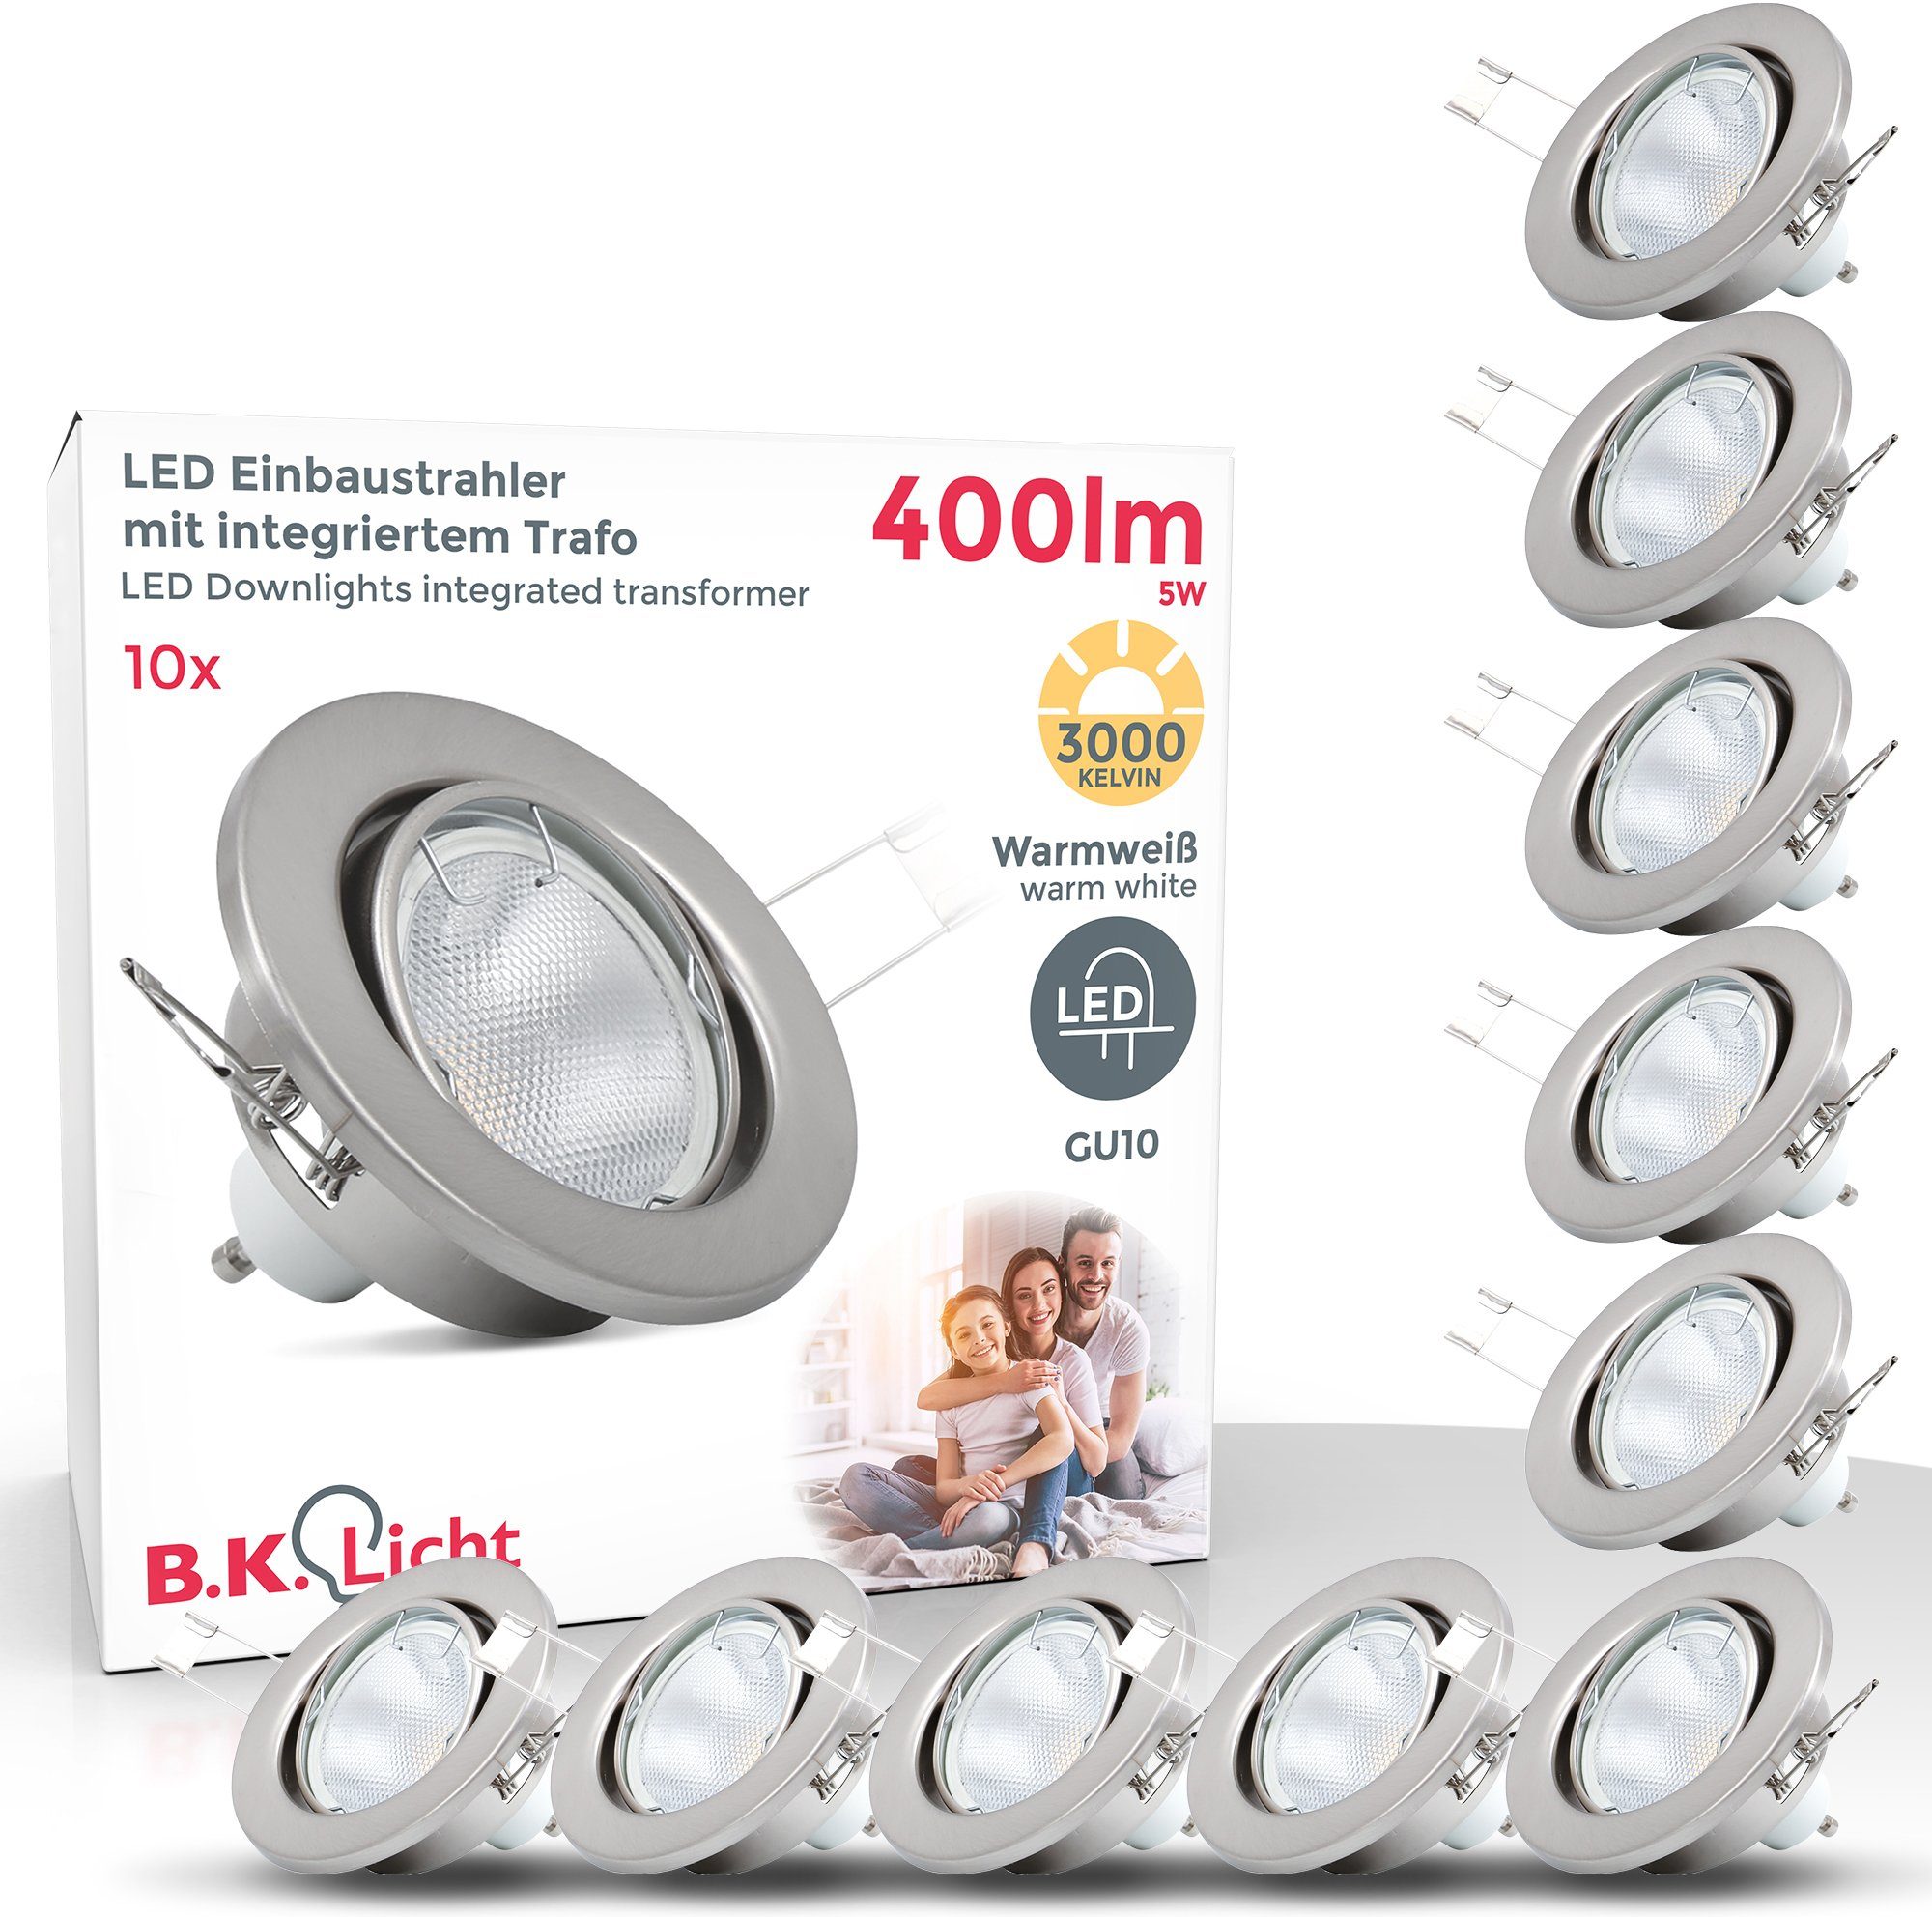 B.K.Licht LED Einbaustrahler, LED wechselbar, Warmweiß, LED Einbauleuchten, schwenkbar, Einbau-Spots, nickel, matt GU10 | Strahler